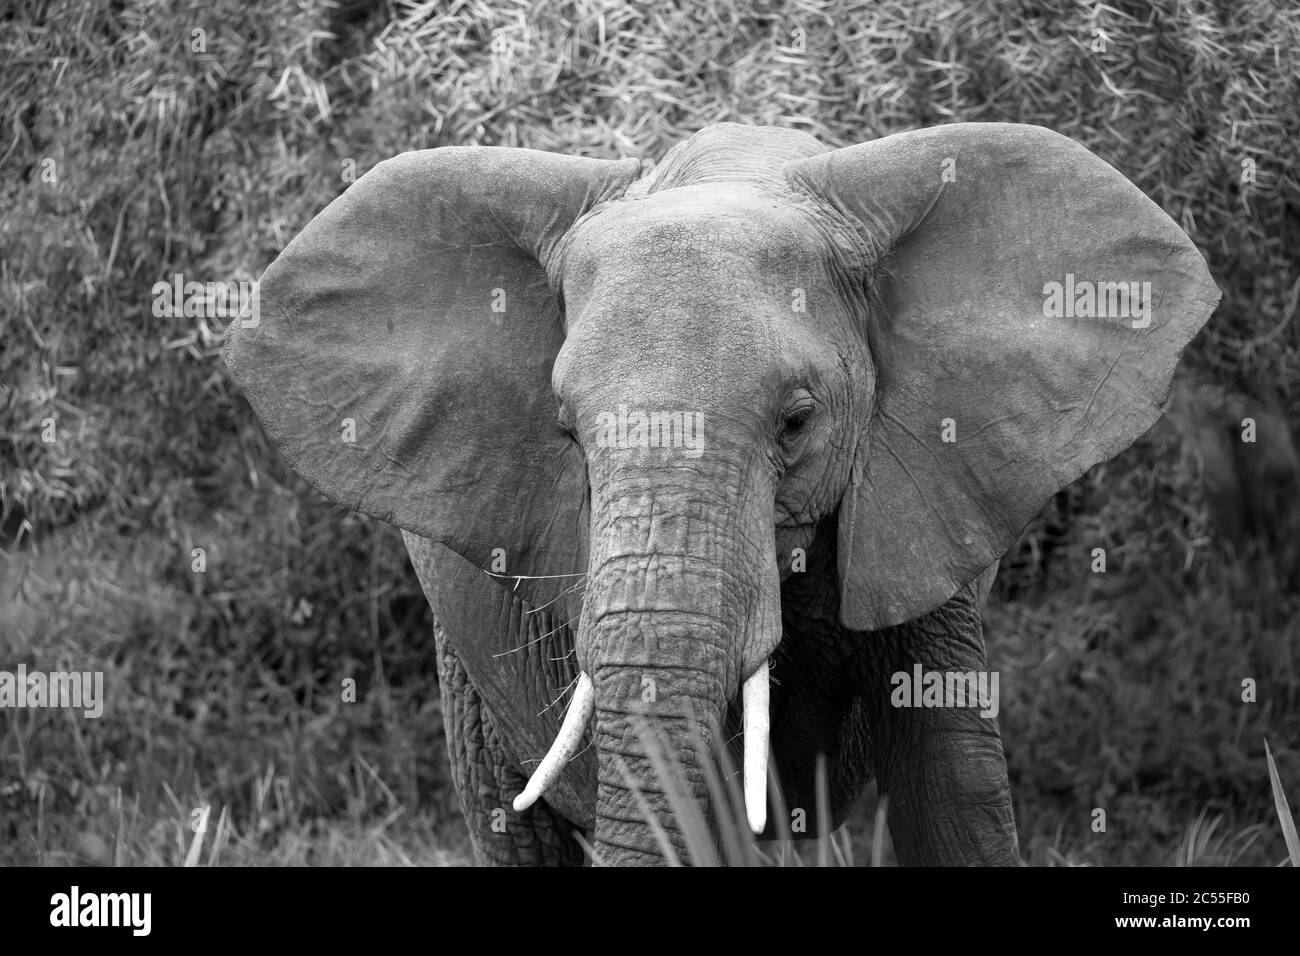 Los elefantes rojos caminan en la sabana entre las plantas Foto de stock